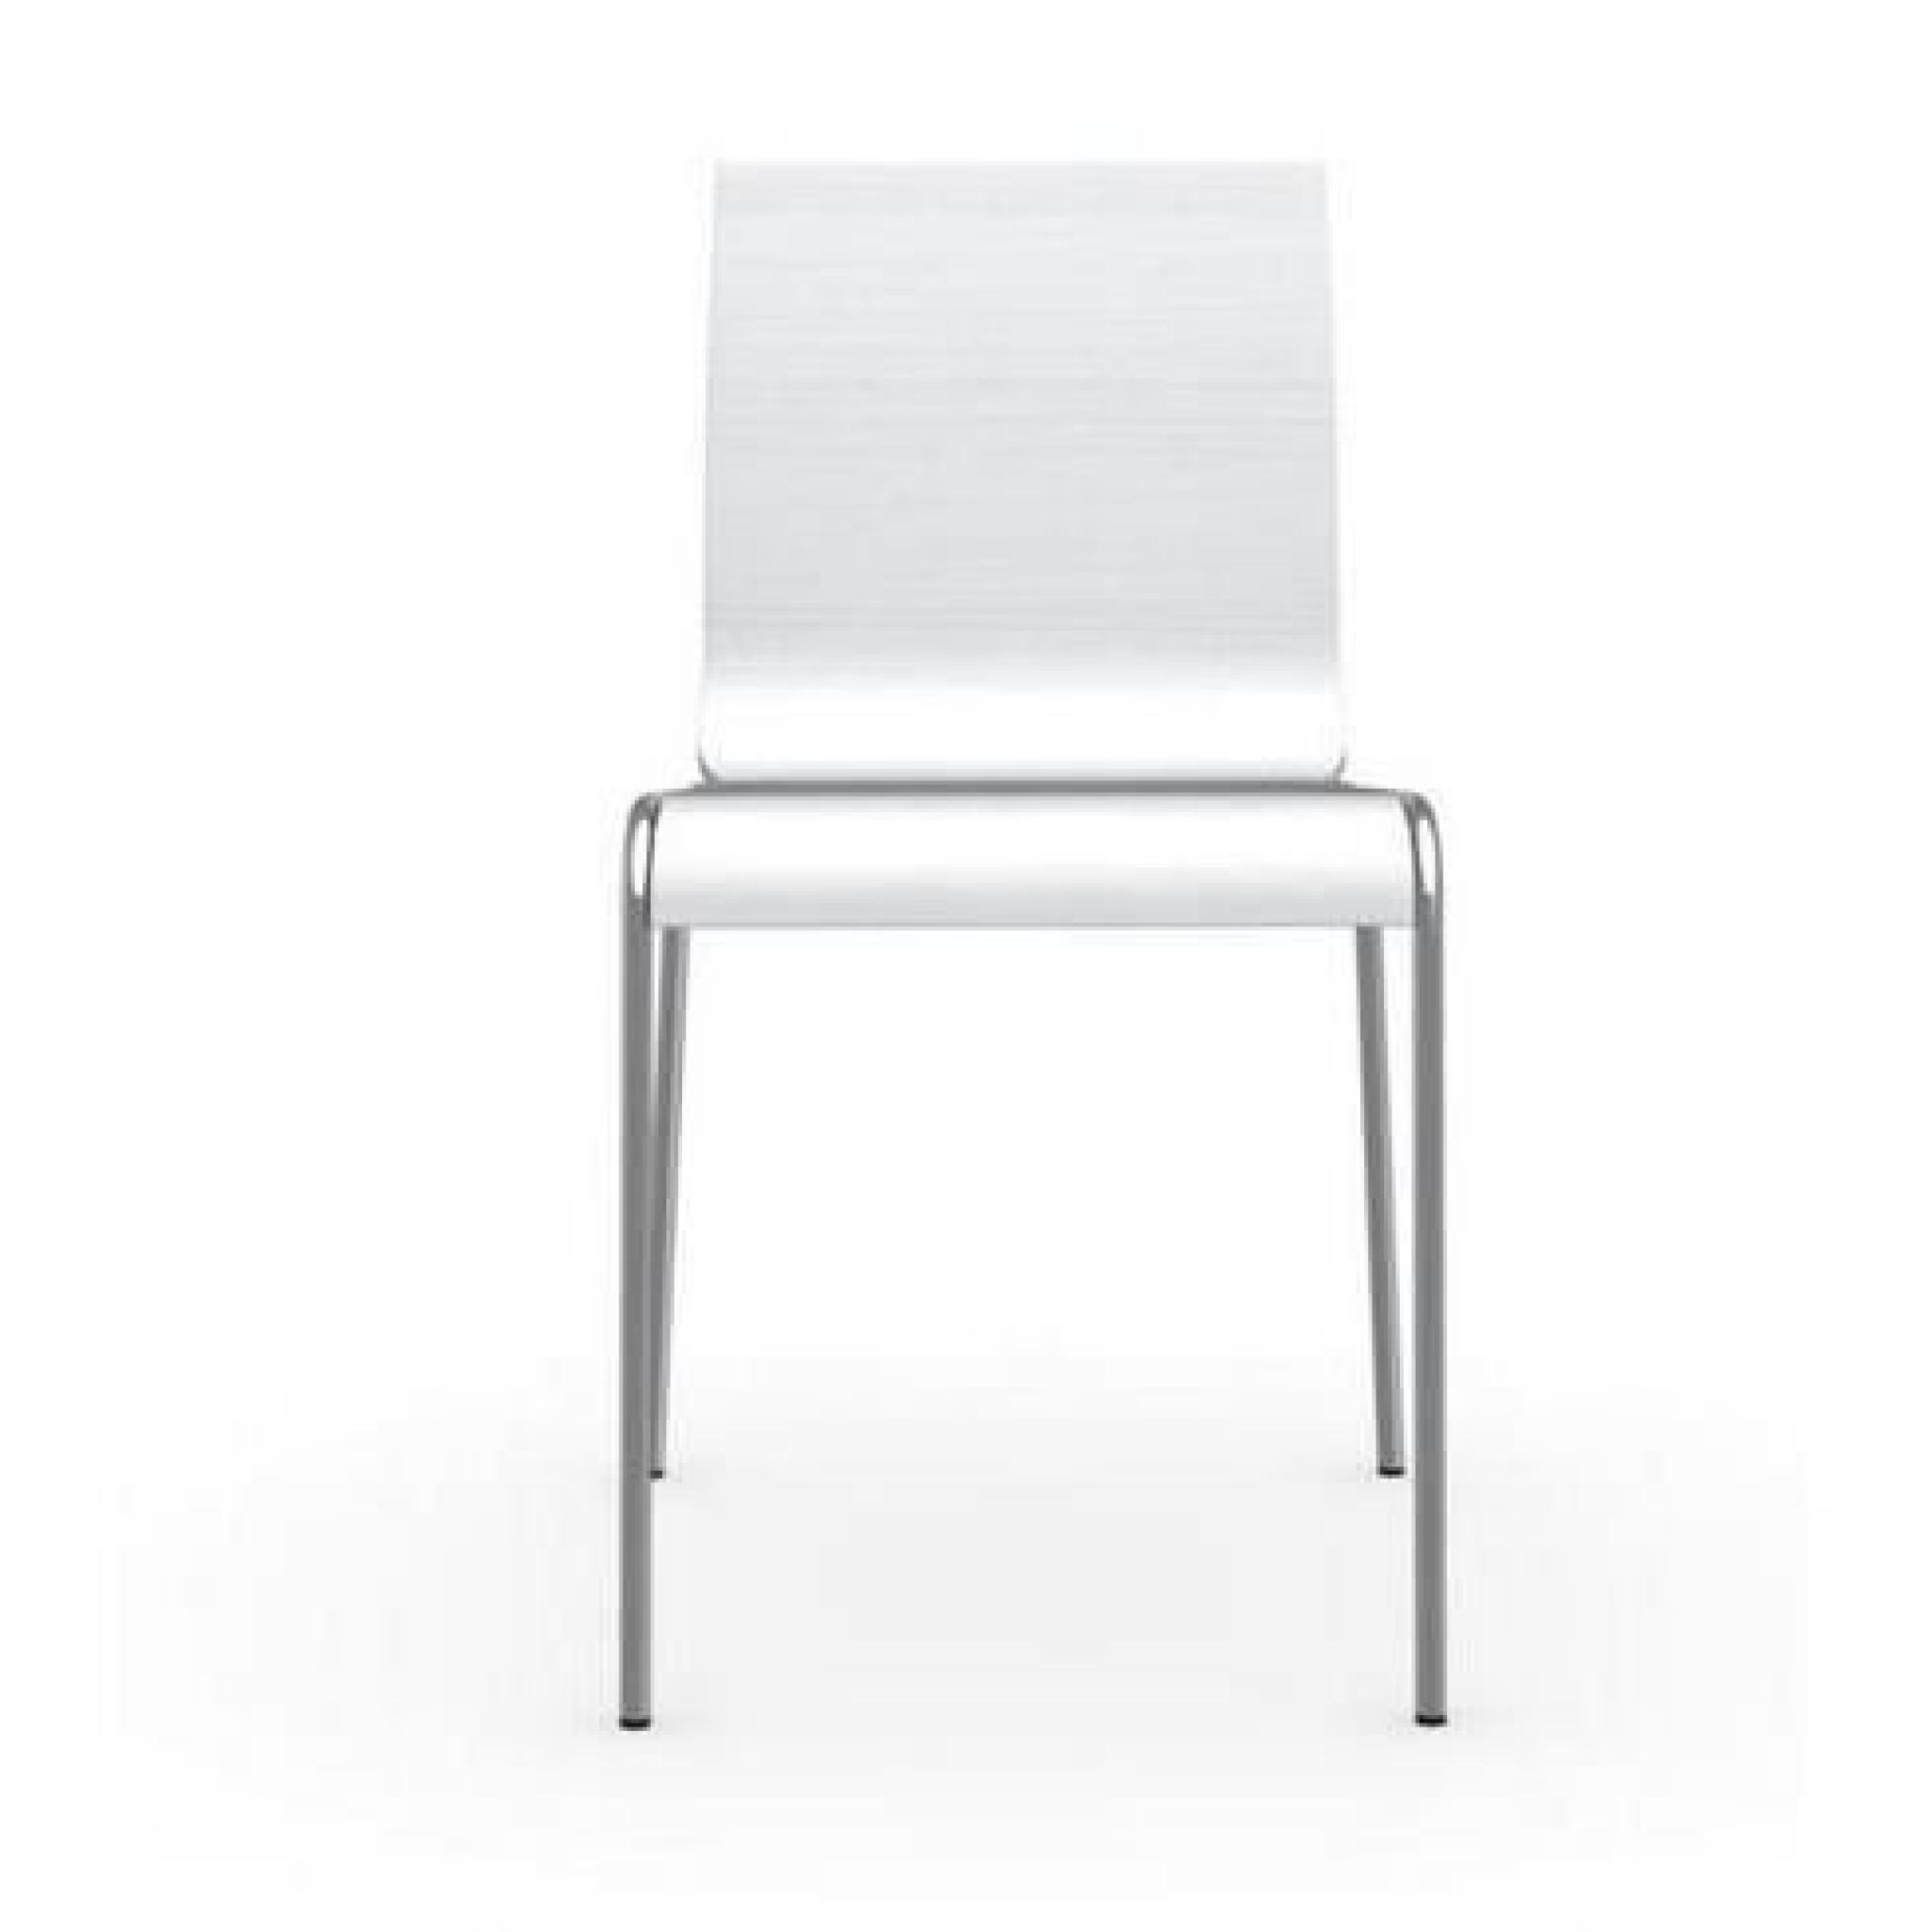 Chaise ONLINE en chêne blanc brossé et acier chromé de calligaris pas cher